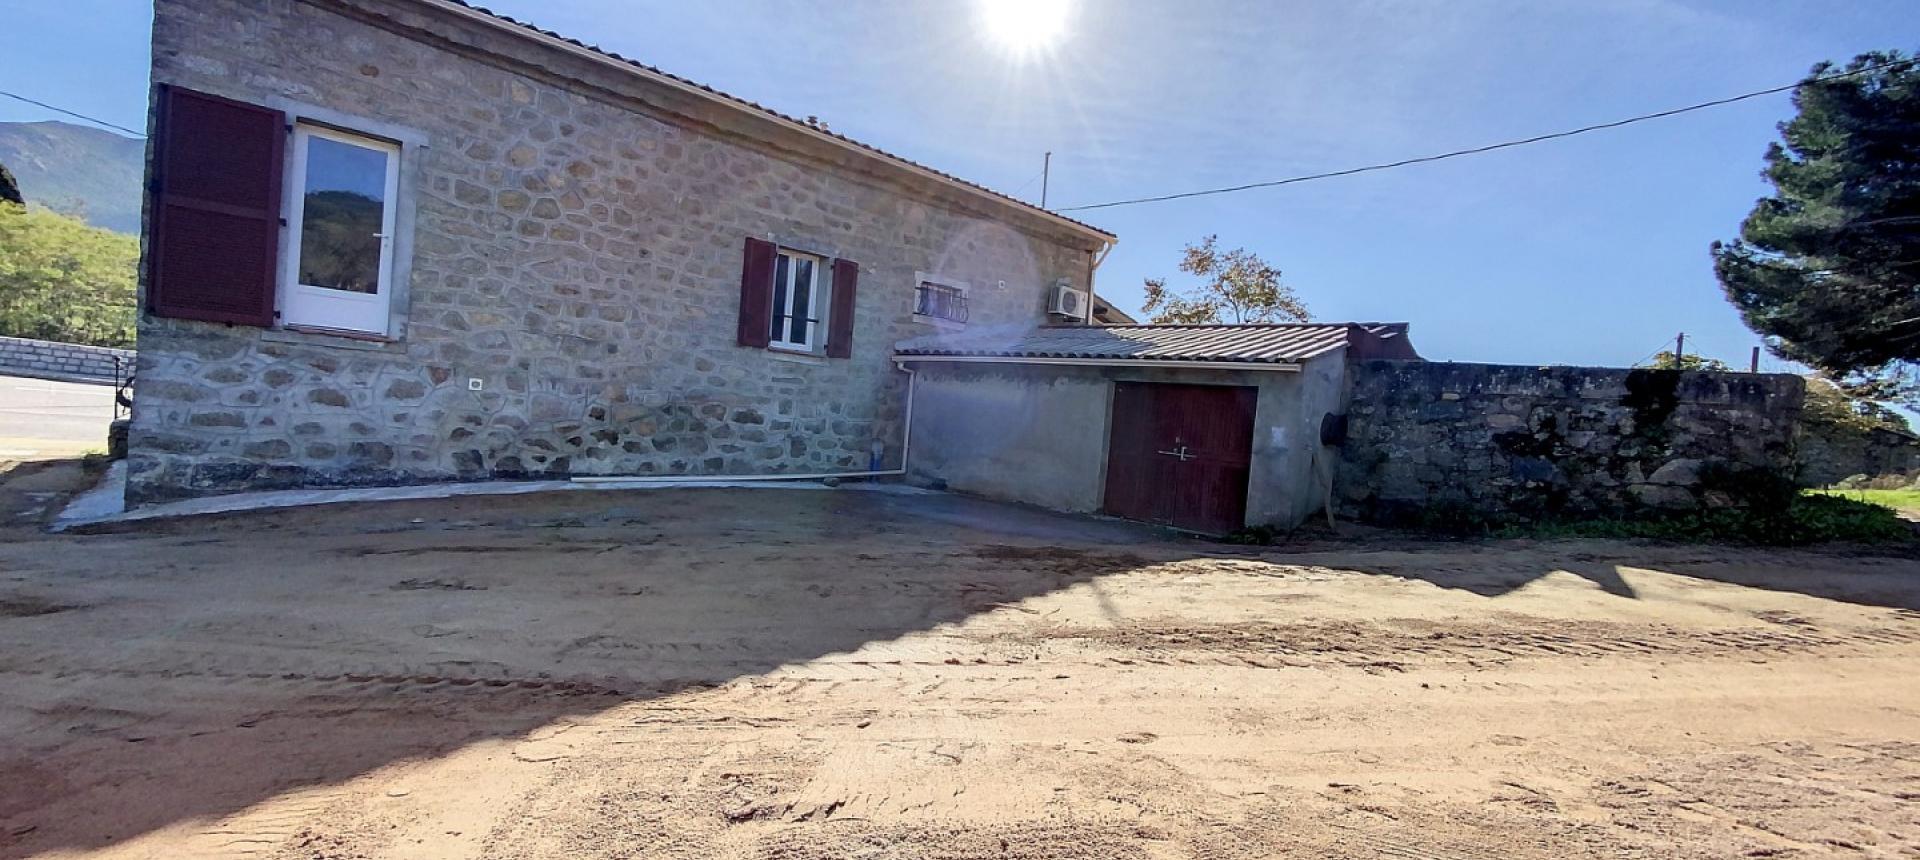 Maison à rénover à vendre proche Ajaccio - Plaine de Peri